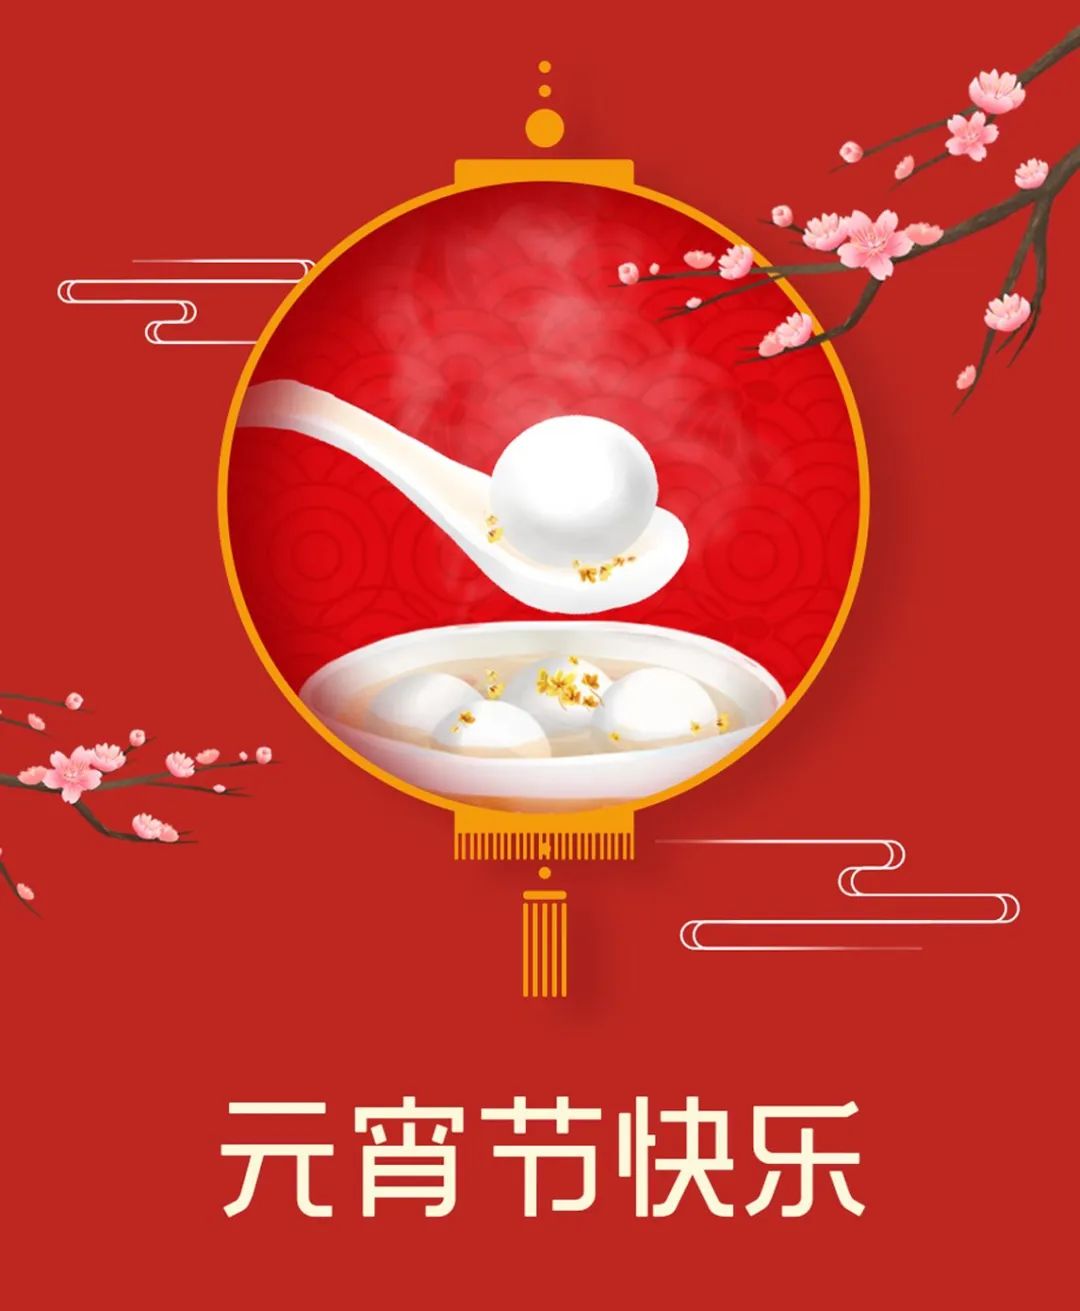 黄山太平湖生态渔业股份有限公司祝您元宵节快乐！